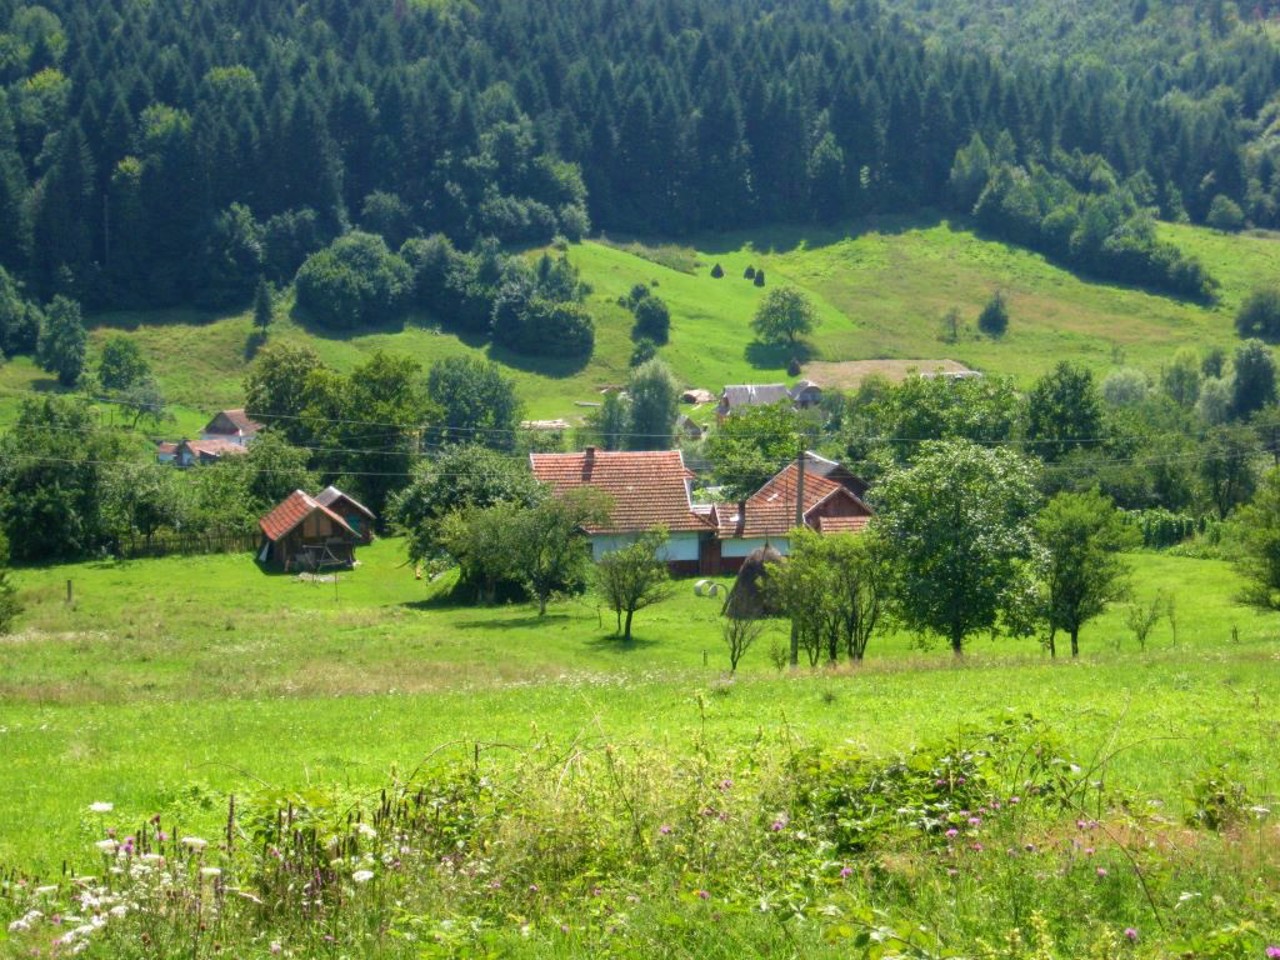 Knyazhdvir village